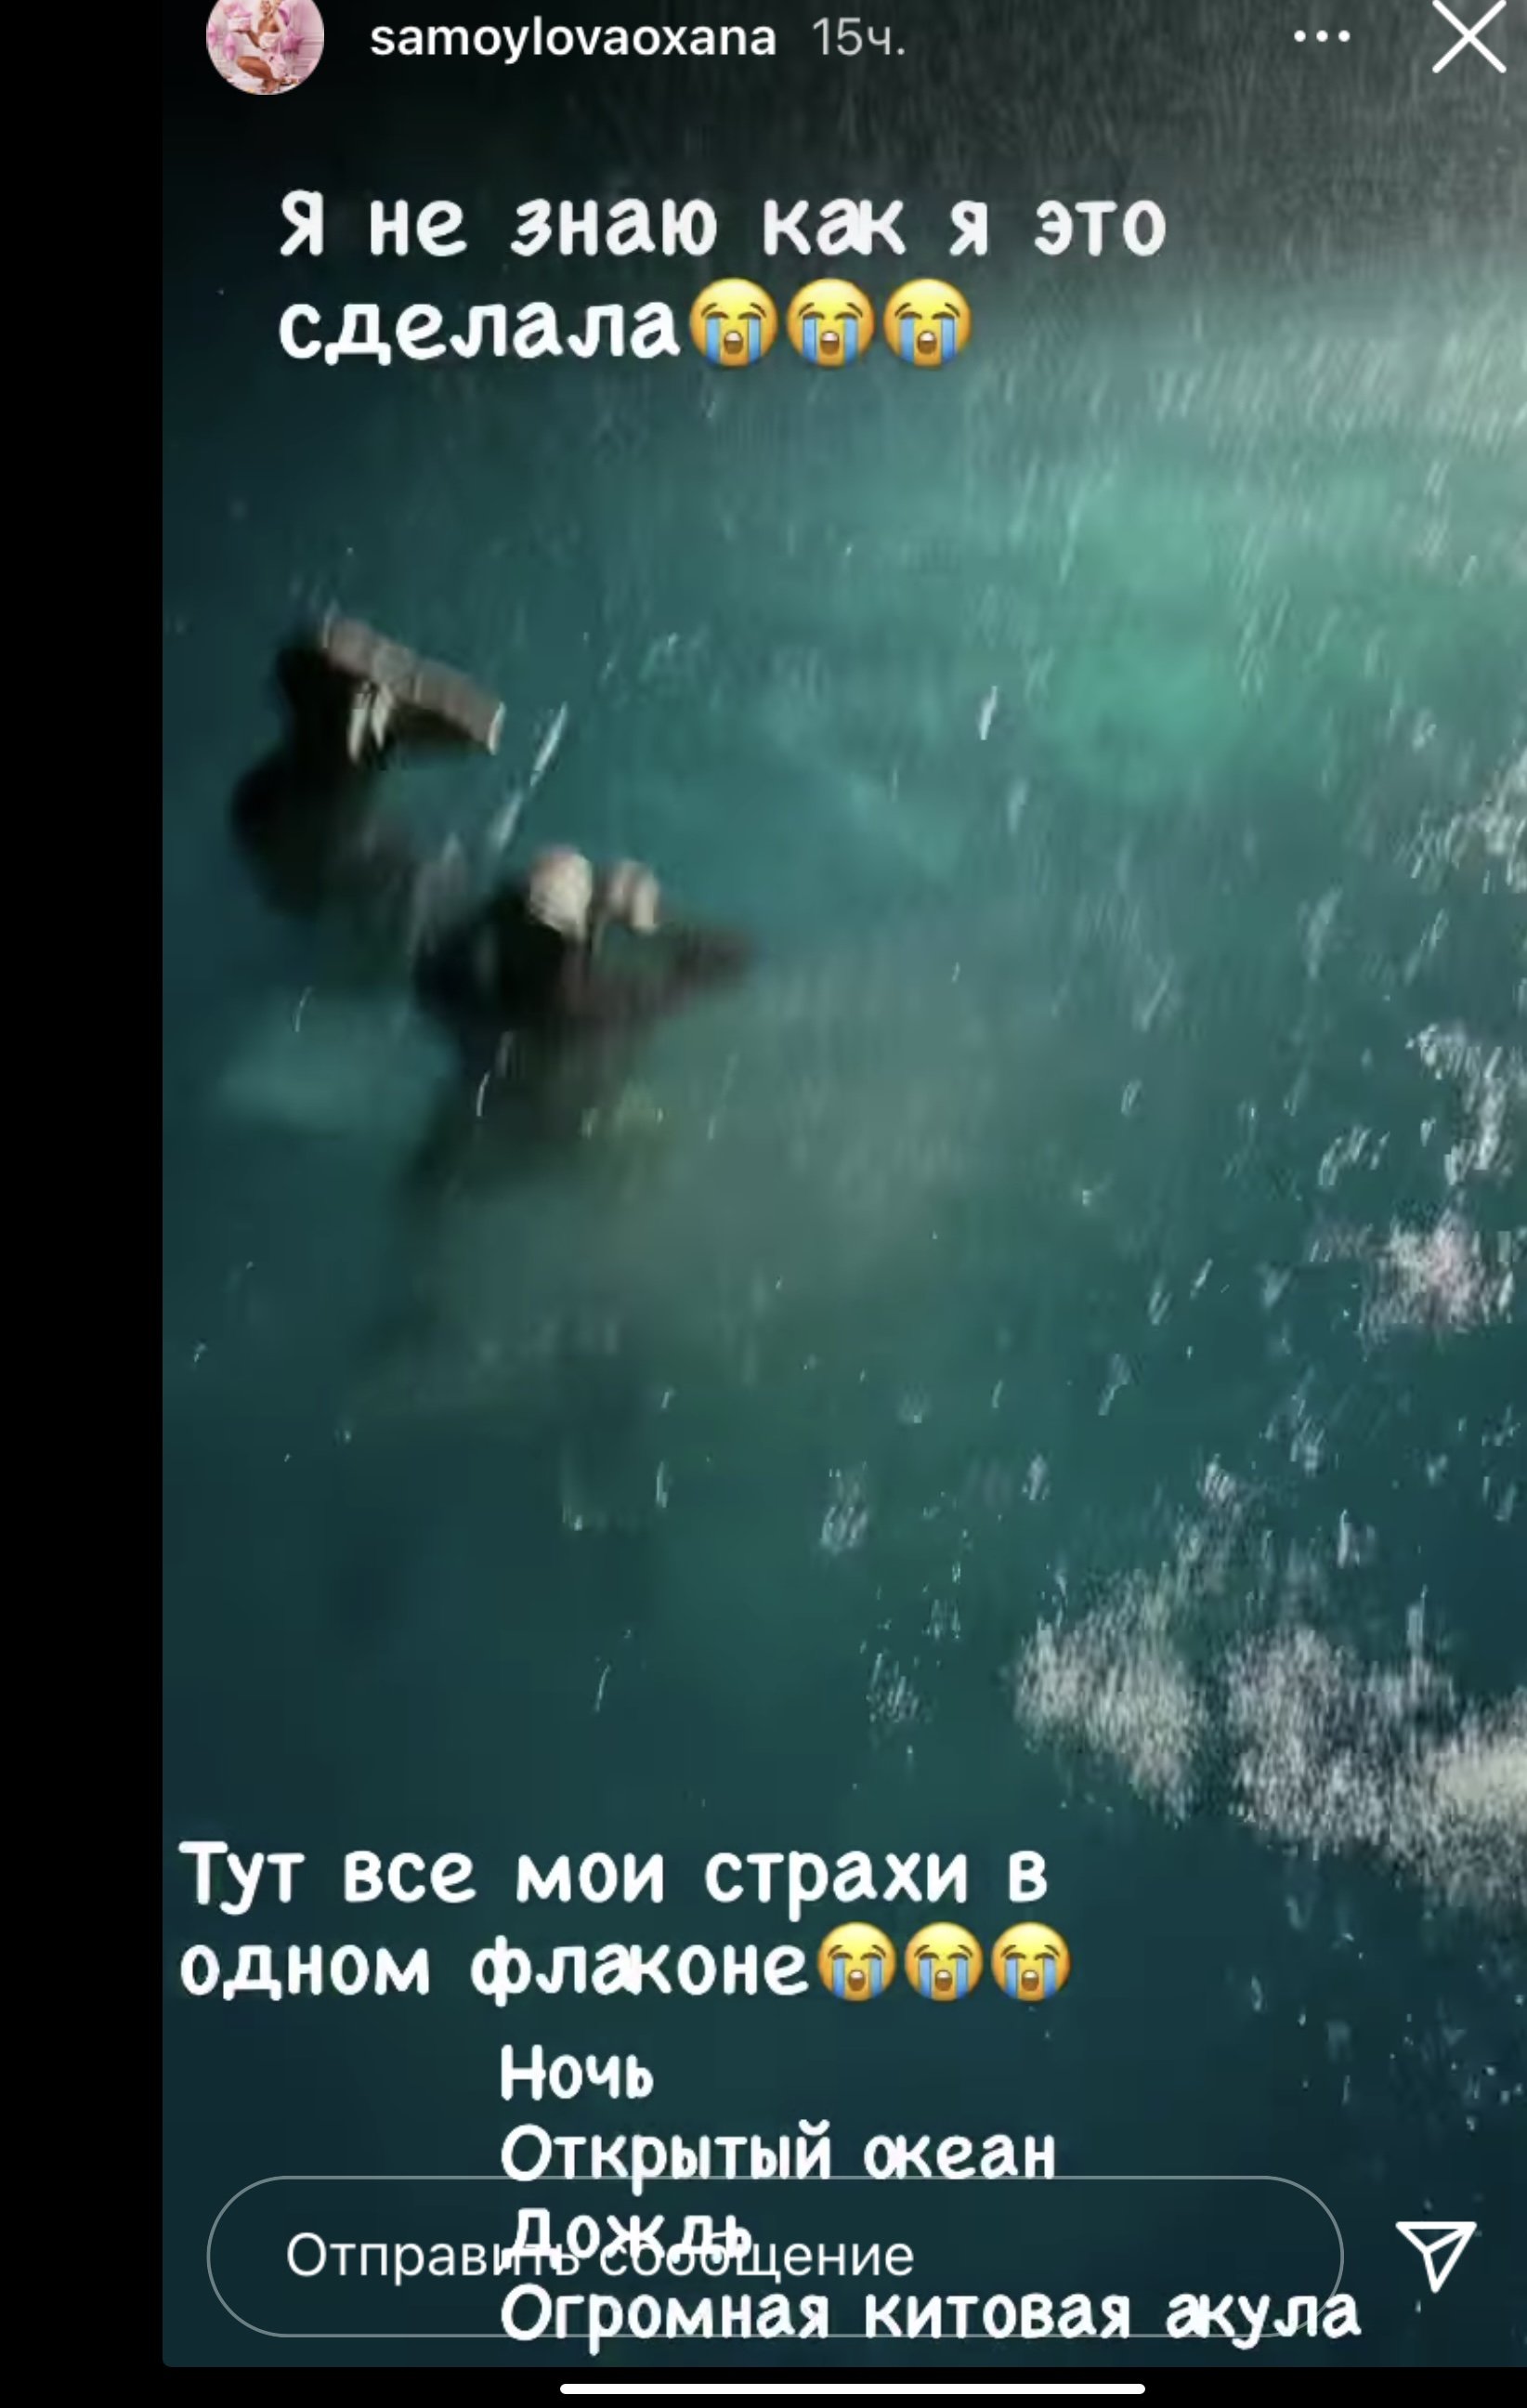 Джиган и Оксана Самойлова поплавали с 8-ми метровой китовой акулой 